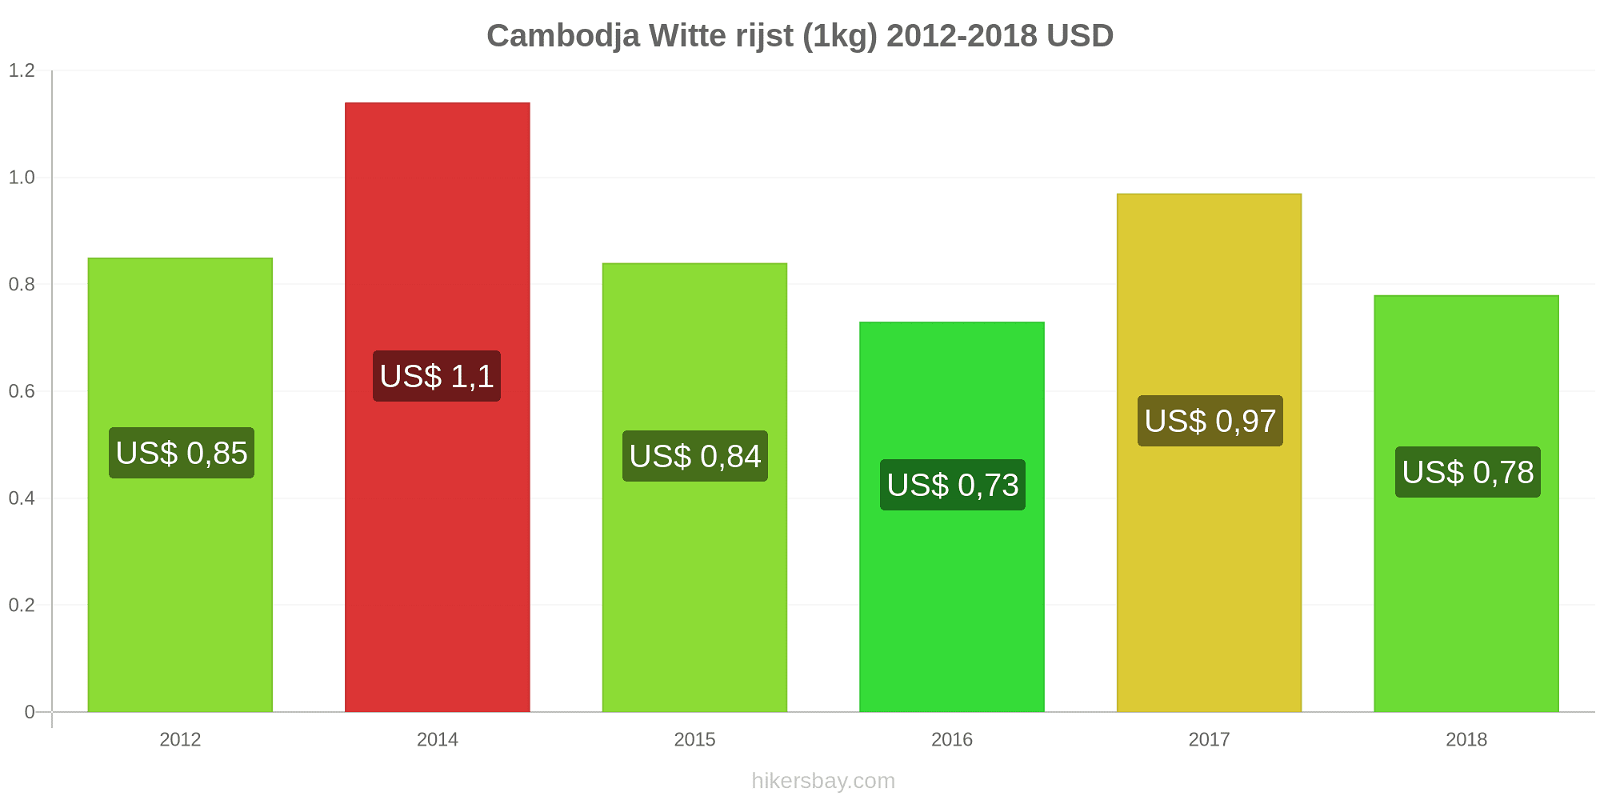 Cambodja prijswijzigingen Rijst (wit) (1kg) hikersbay.com